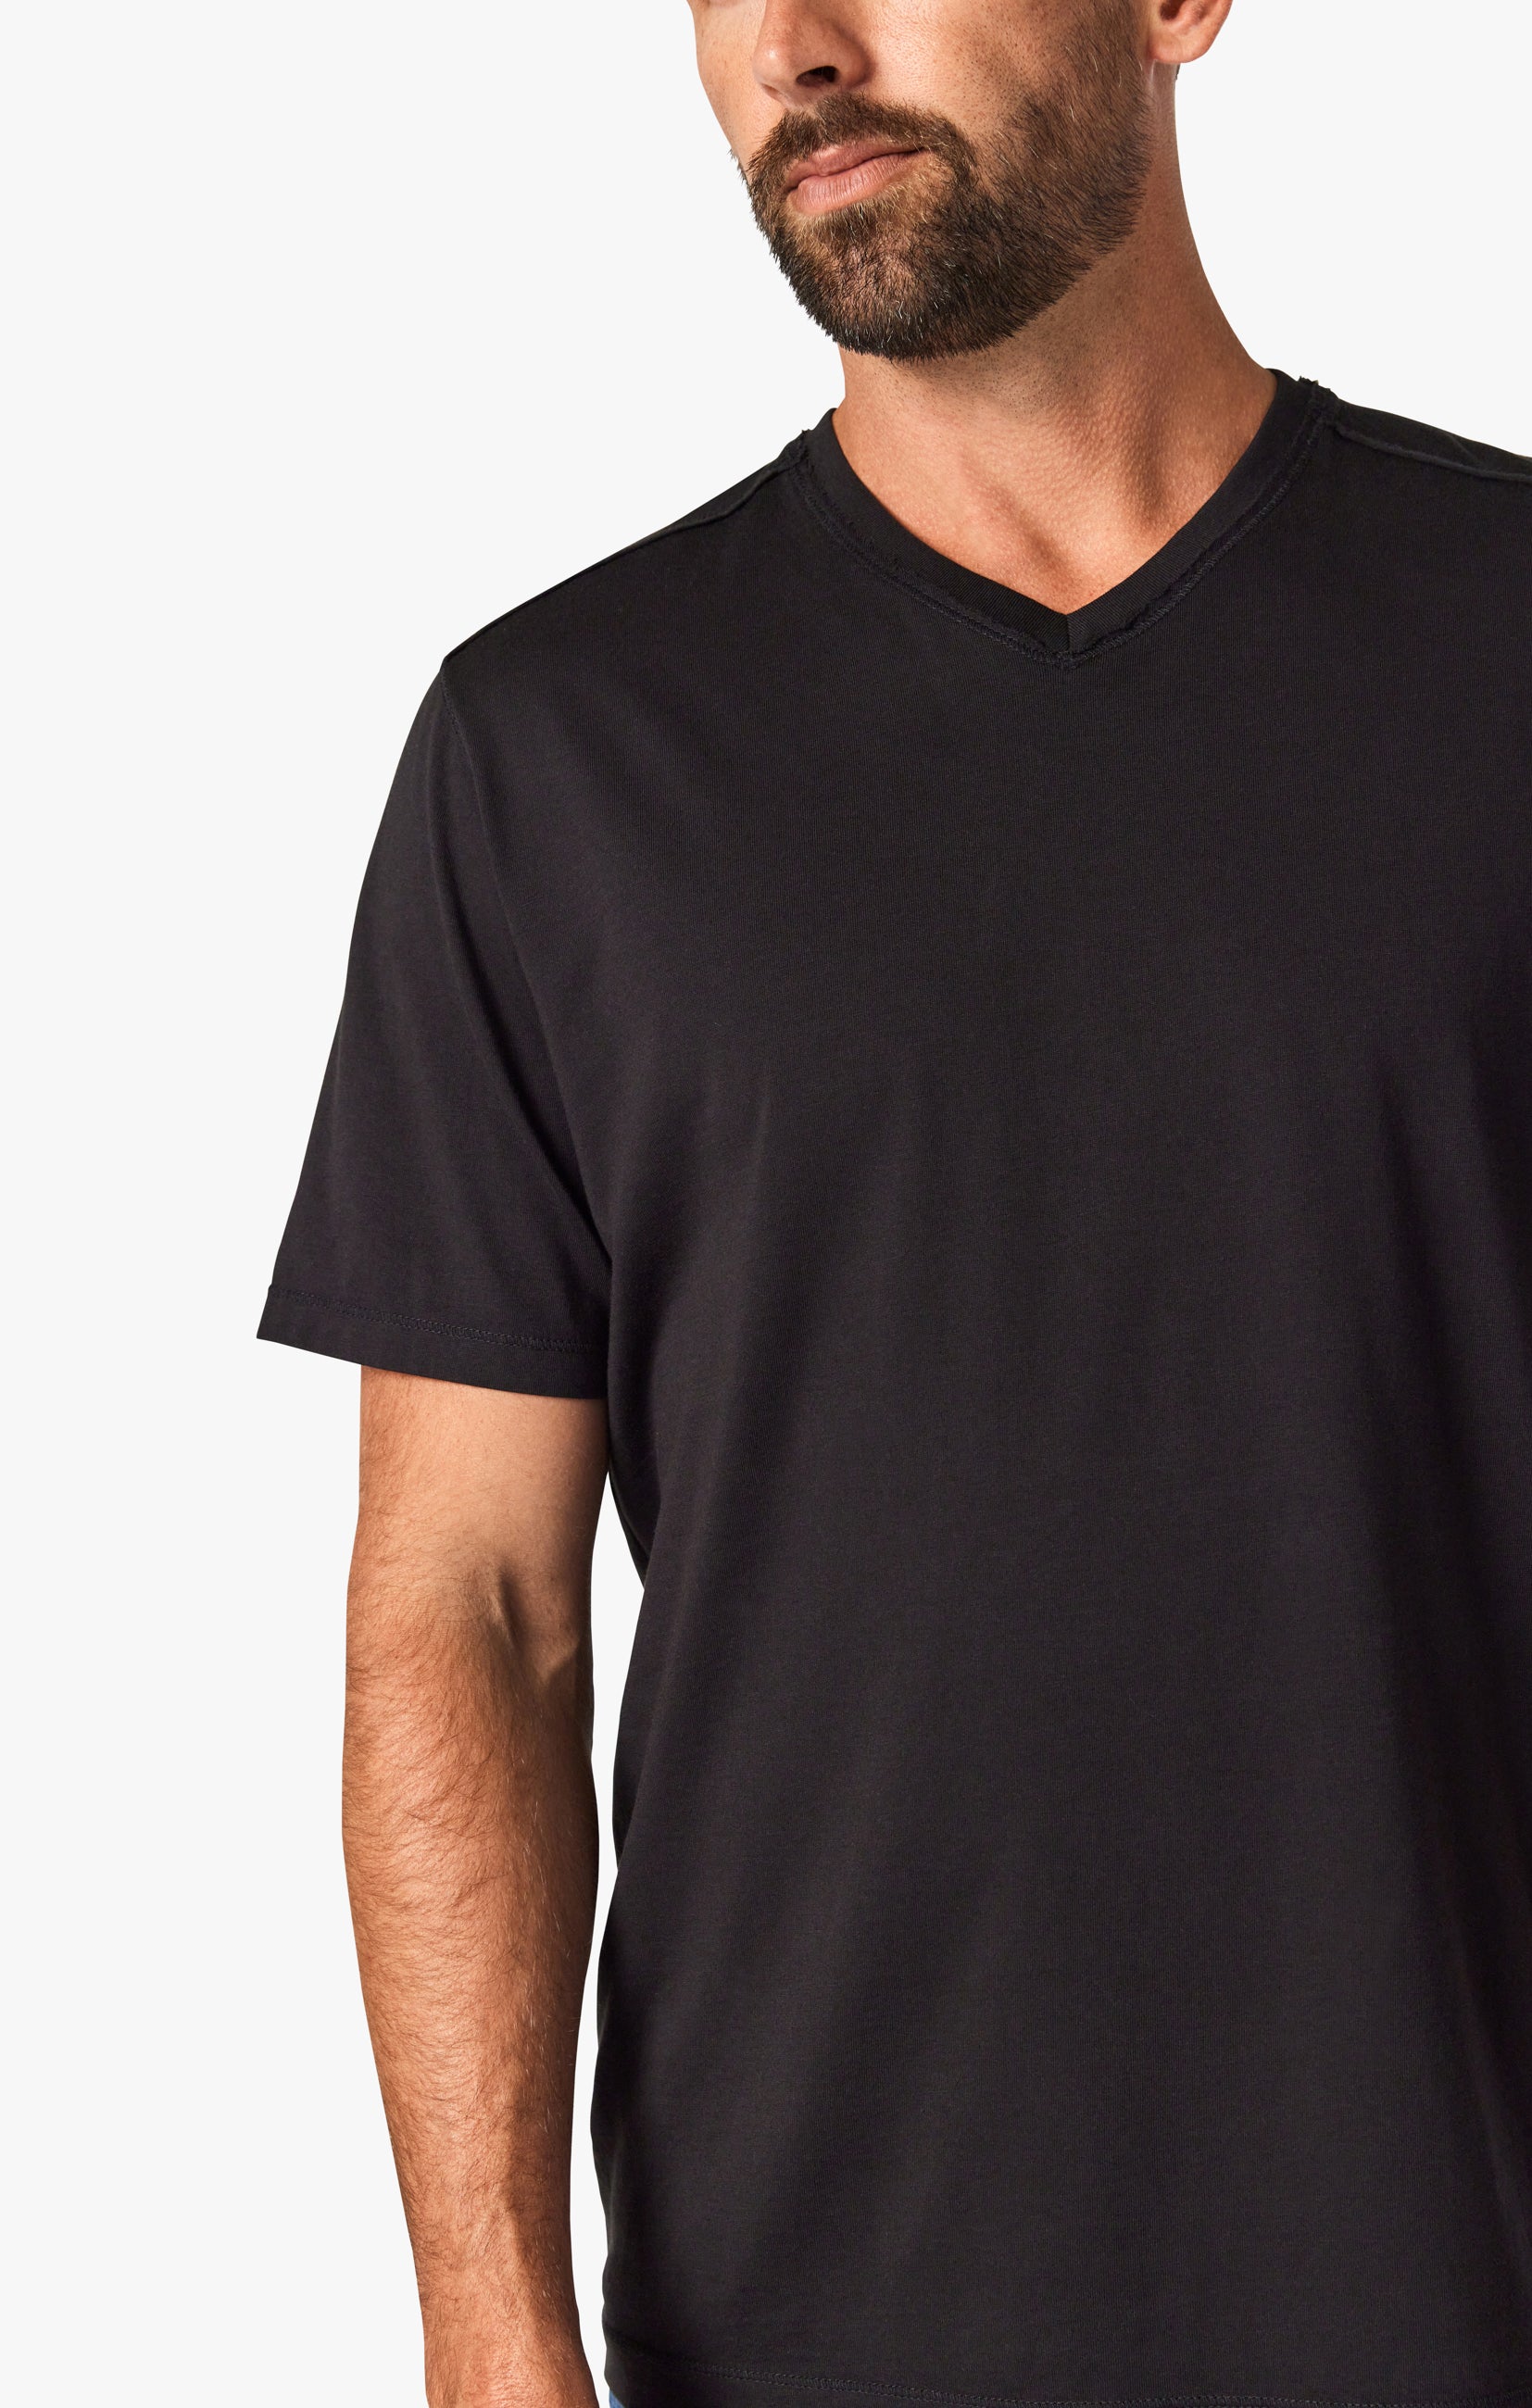 34 Heritage Men's Deconstructed V-Neck T-Shirt in Black – 34